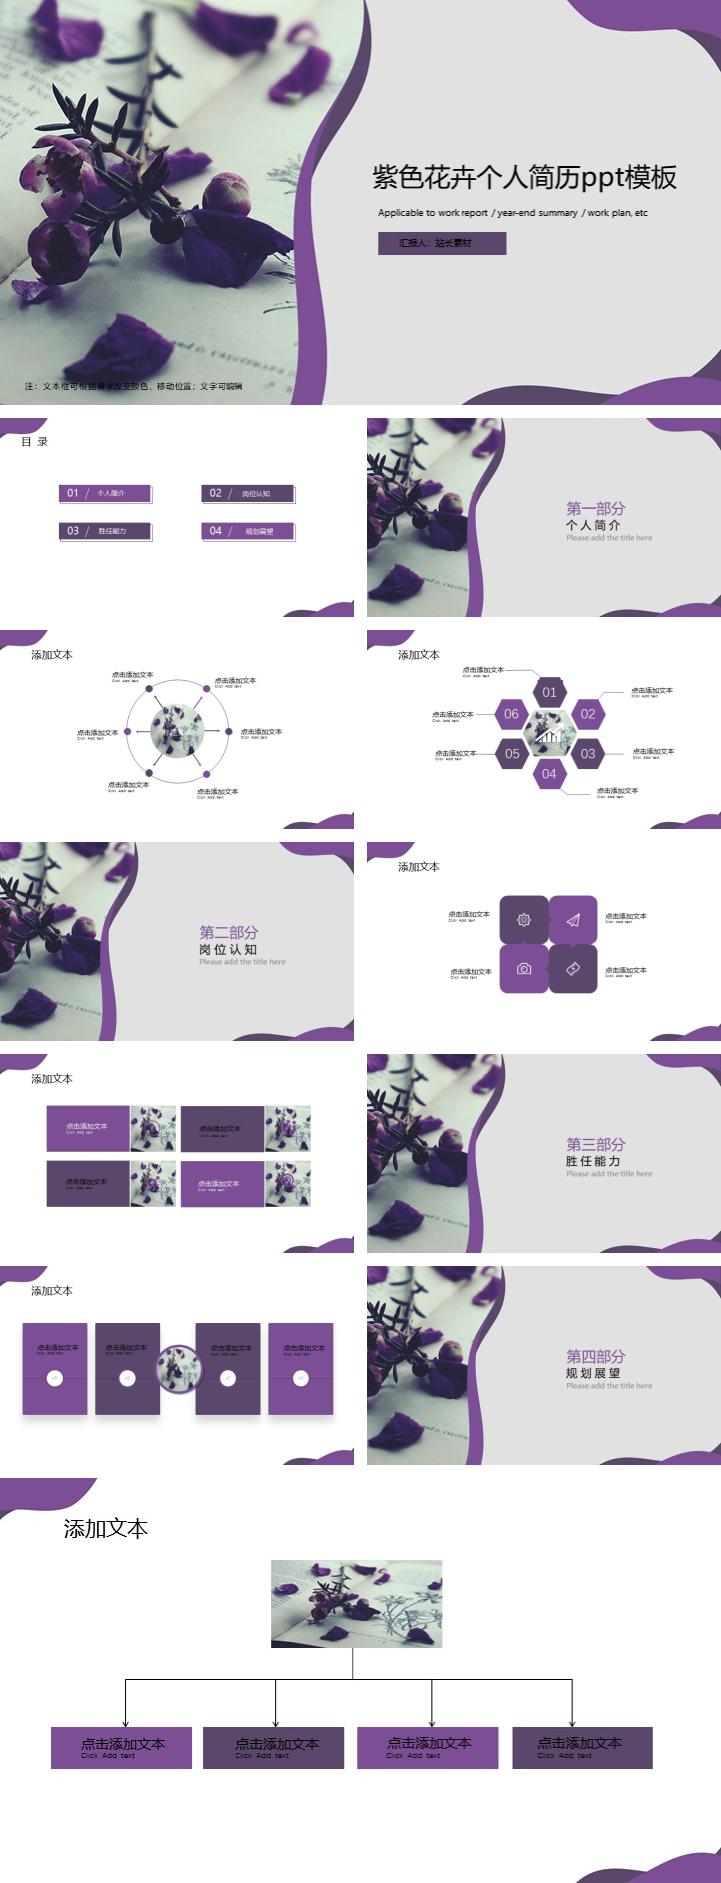 紫色花卉个人简历ppt模板免费下载 PPT模板 第1张